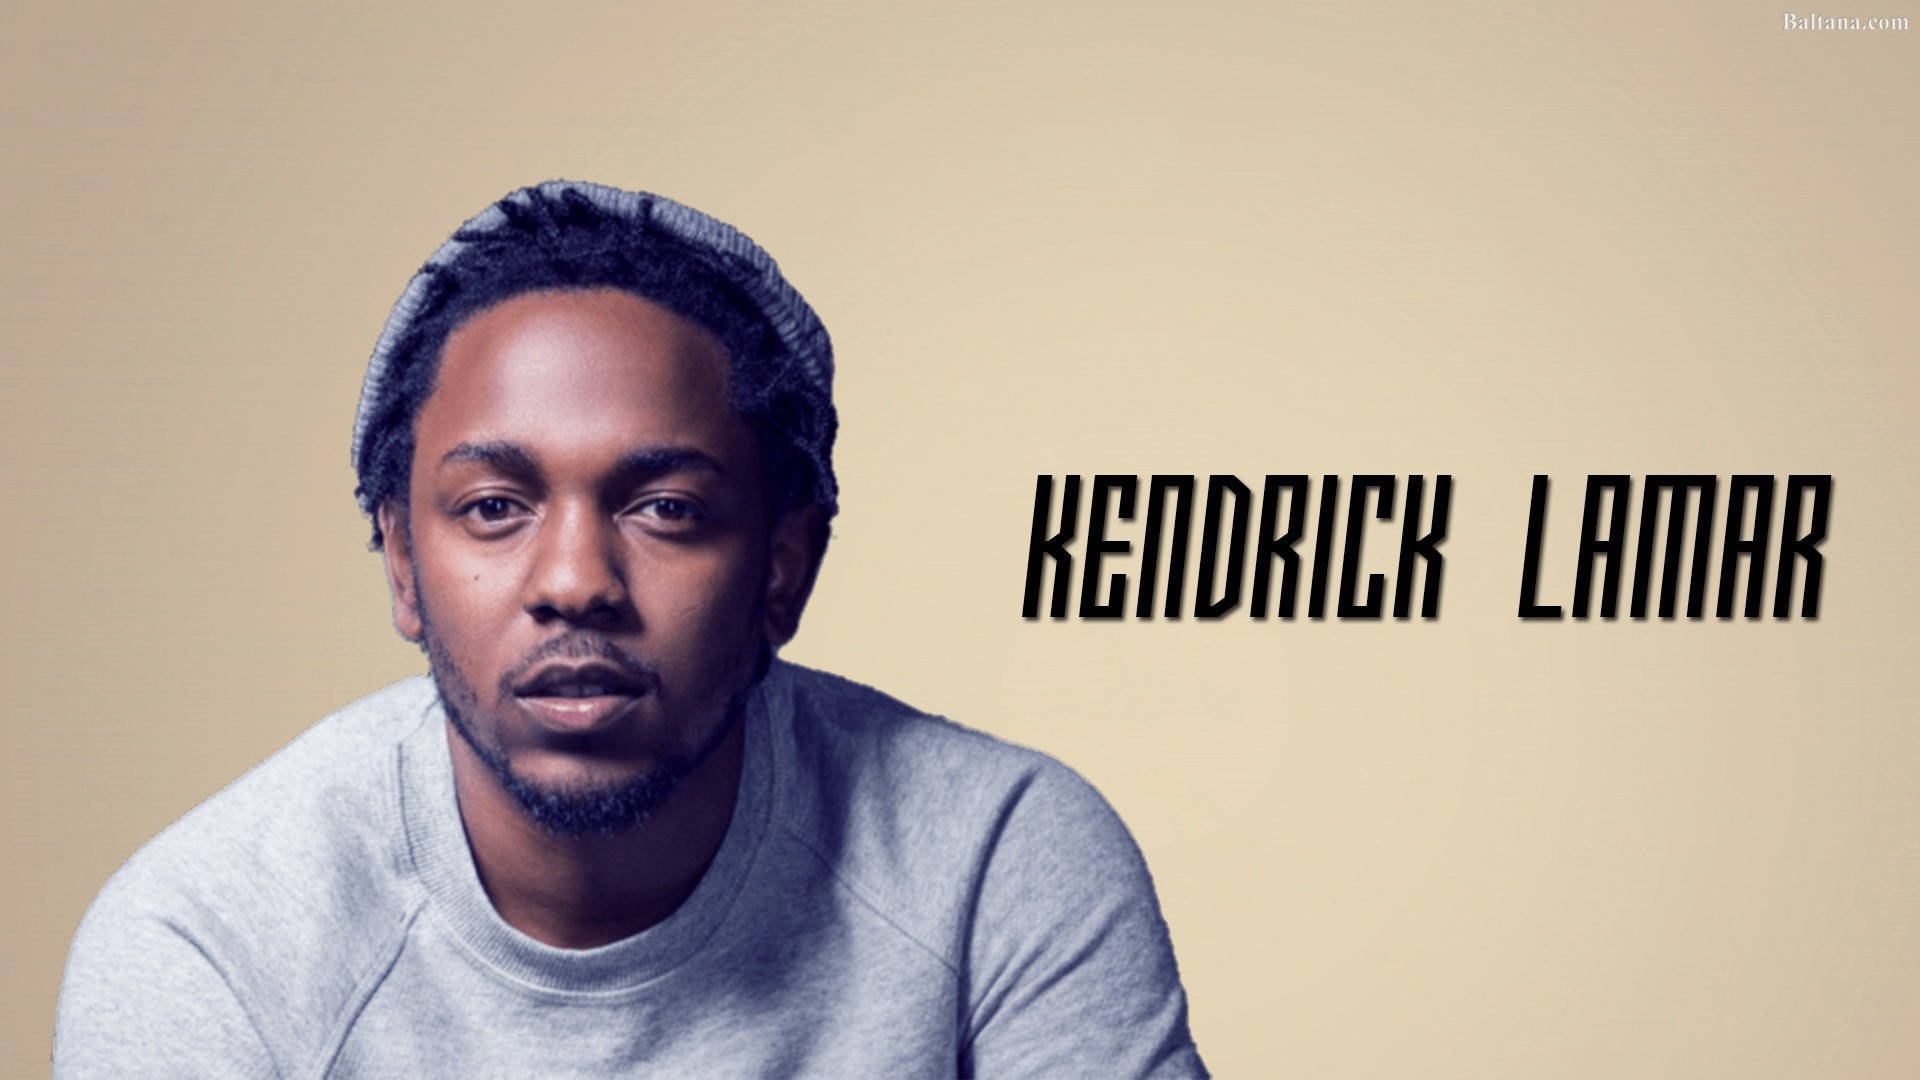 Kendrick Lamar In Brown Cover Wallpaper